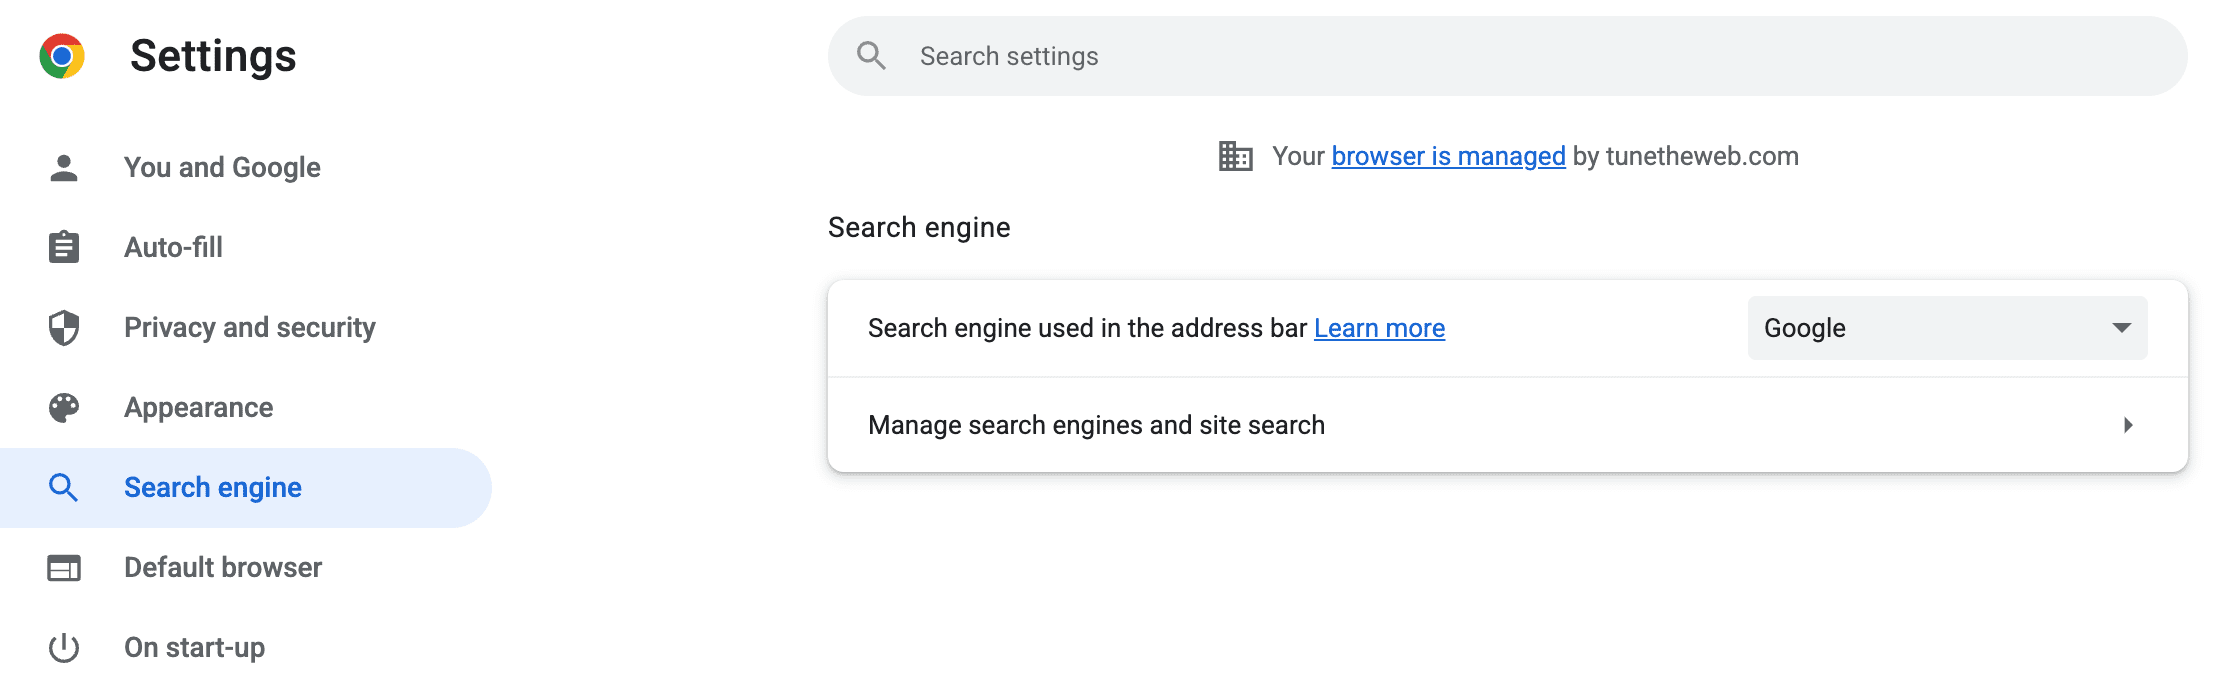 צילום מסך של הגדרות Chrome לדף &#39;מנועי חיפוש&#39; שבו ניתן &#39;לנהל מנועי חיפוש וחיפוש באתרים&#39;